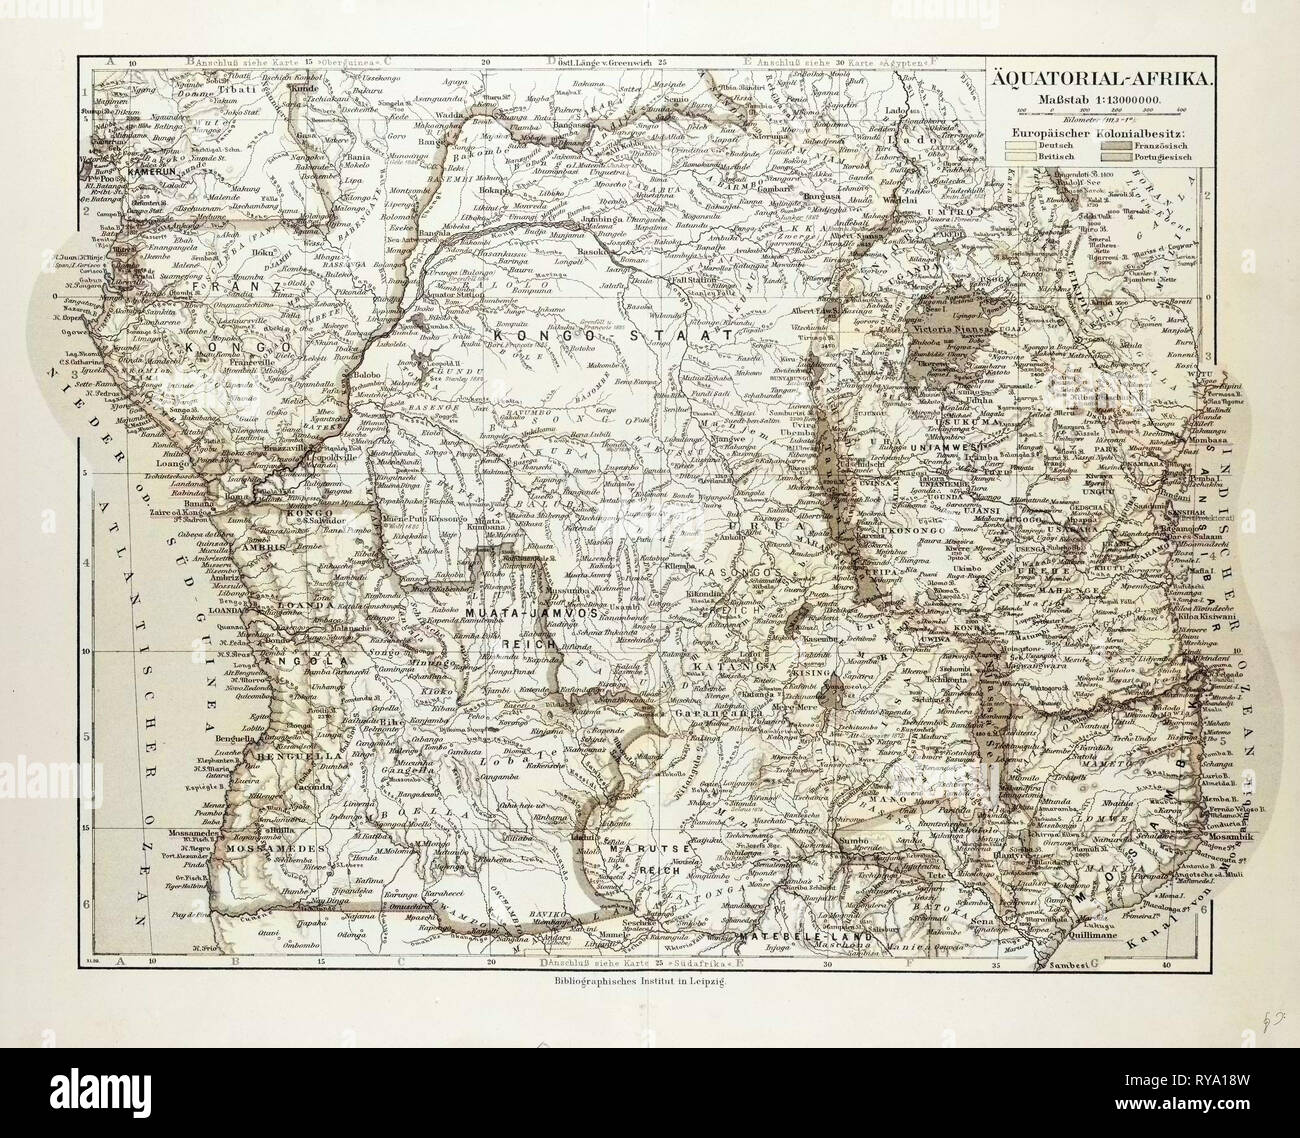 La carte de l'Afrique équatoriale la République du Mozambique, la République d'Angola Ouganda Kenya 1899 Banque D'Images